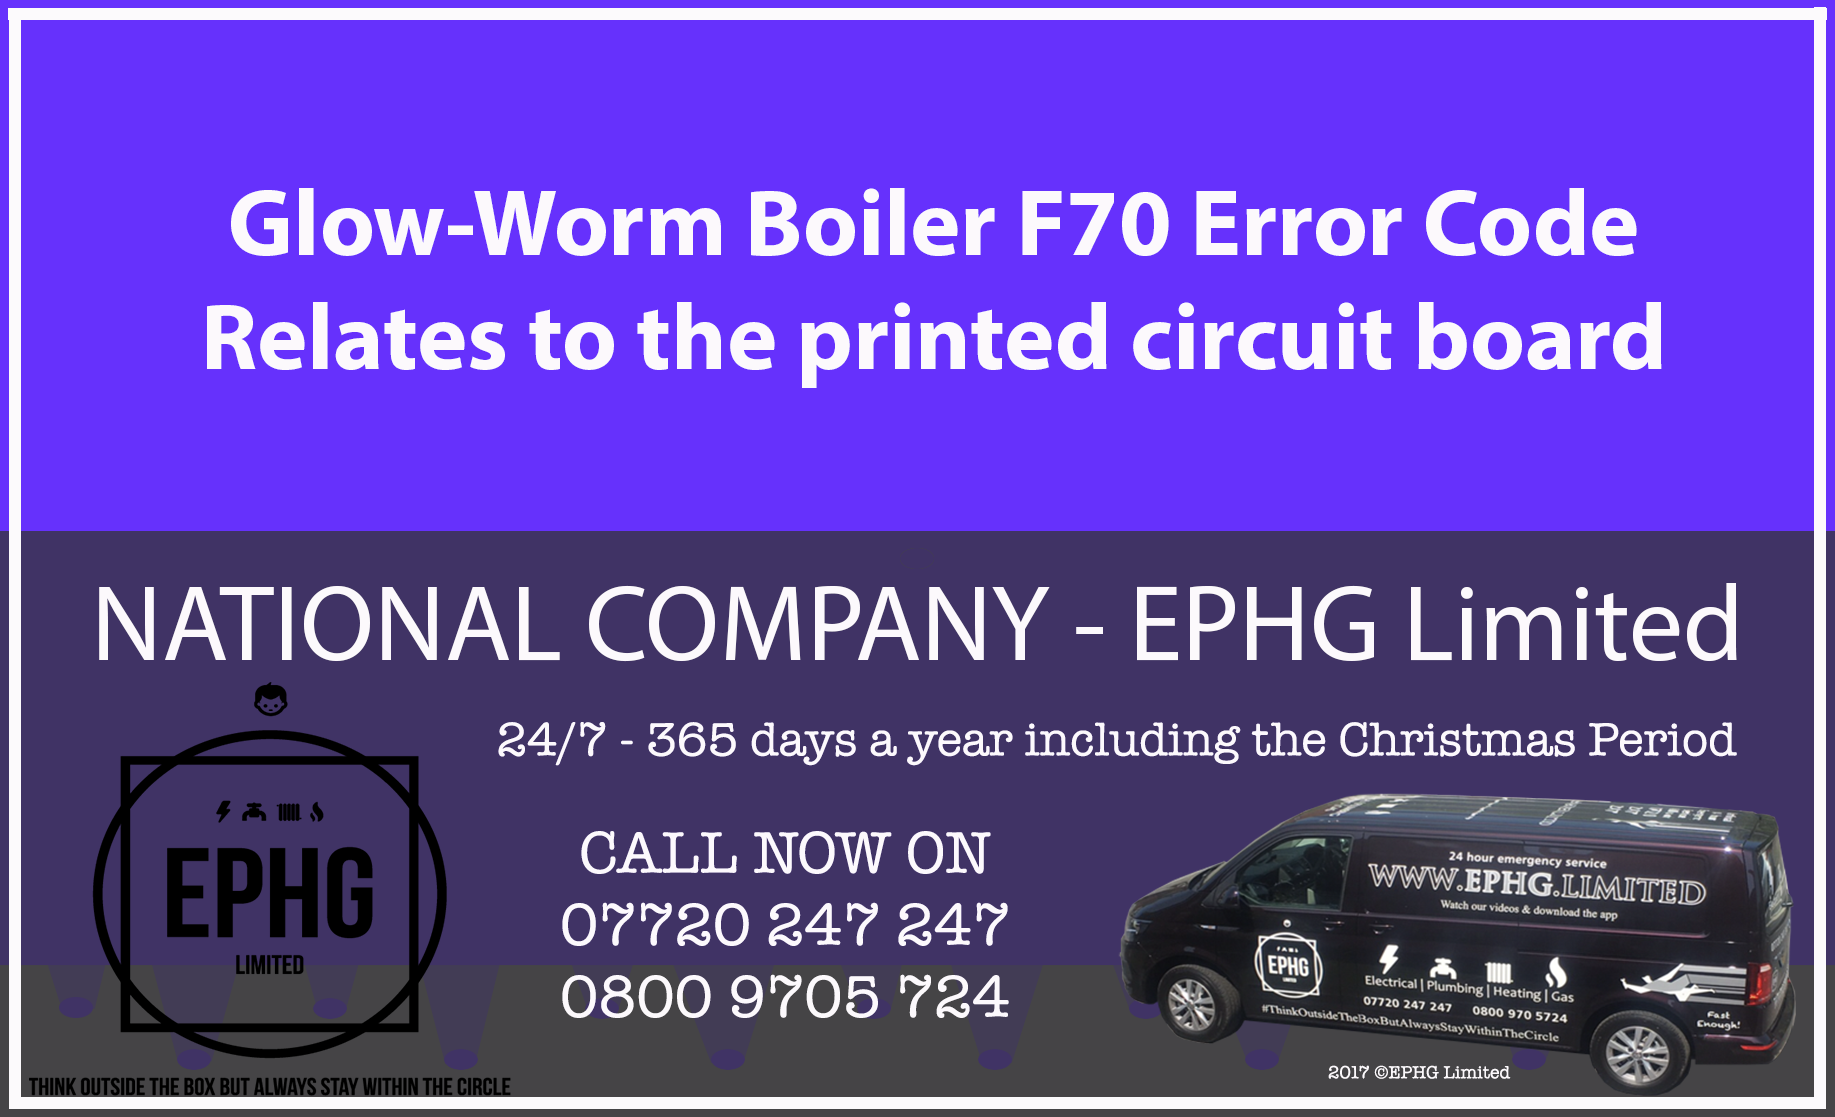 Glow-Worm boiler error code F70